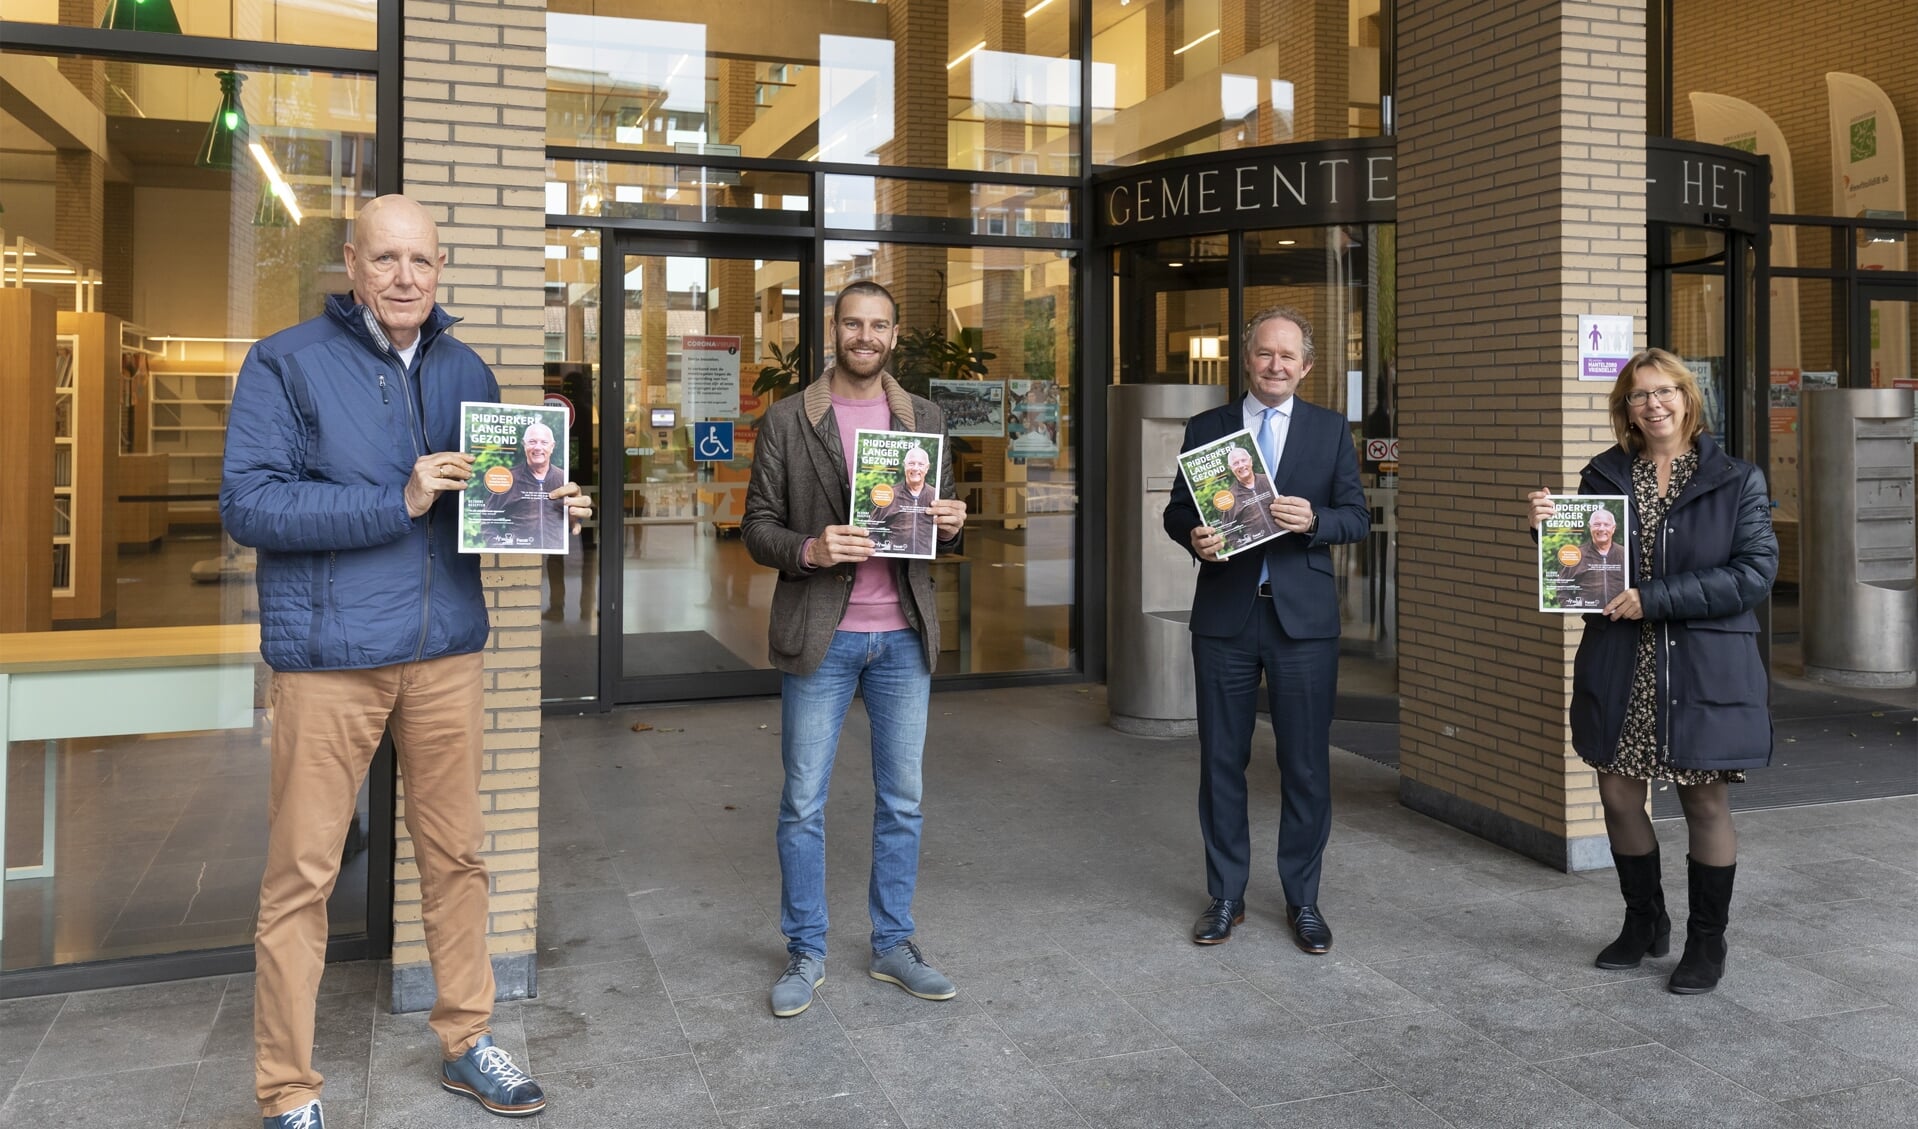 De eerste magazines zijn uitgereikt aan ambassadeur Jan Jansen en wethouder Marten Japenga